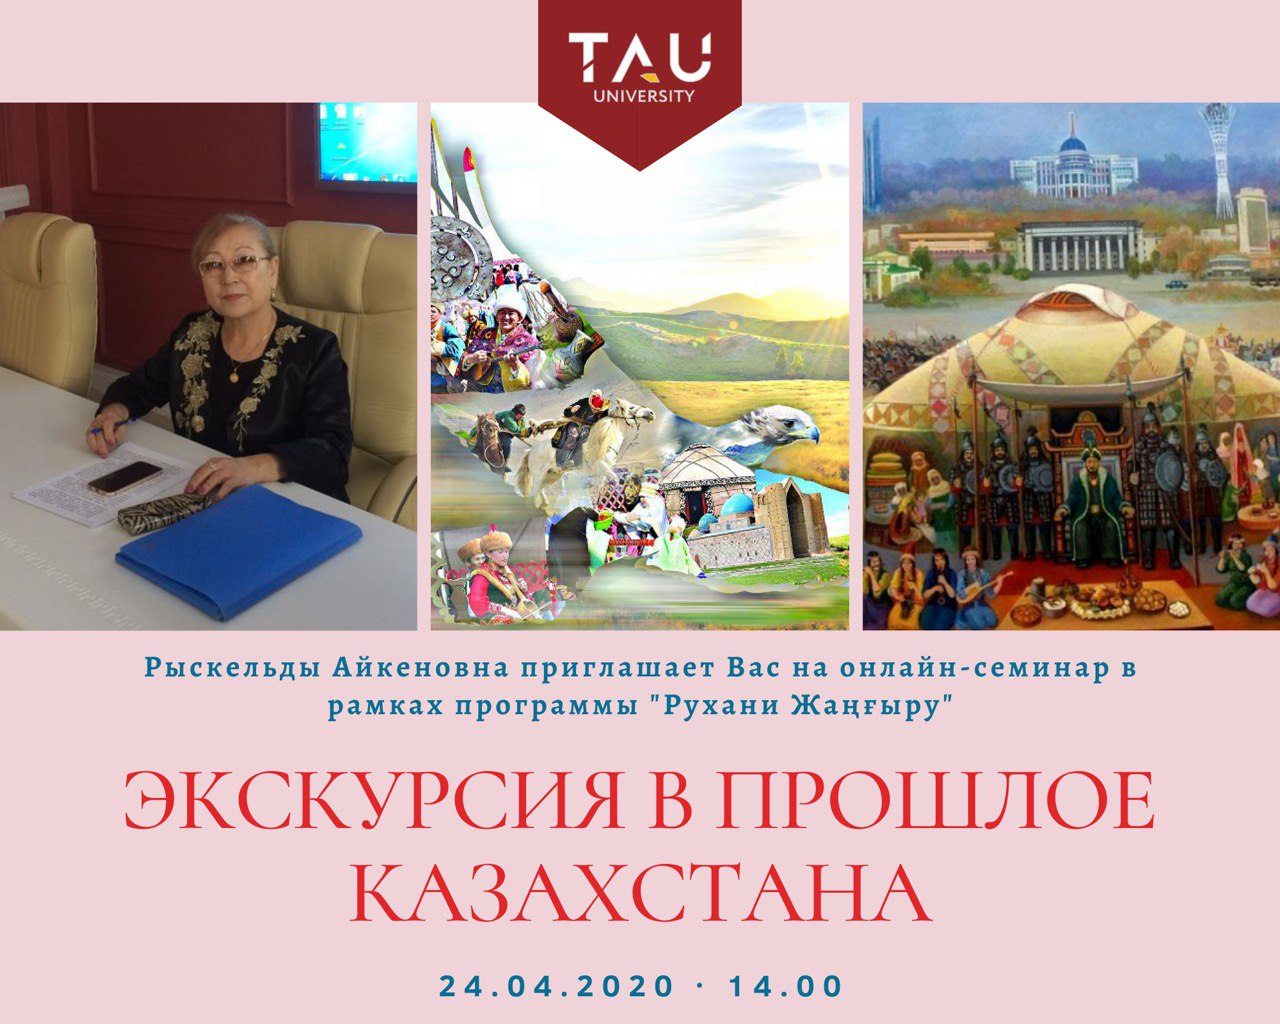 Экскурсия в прошлое Казахстана